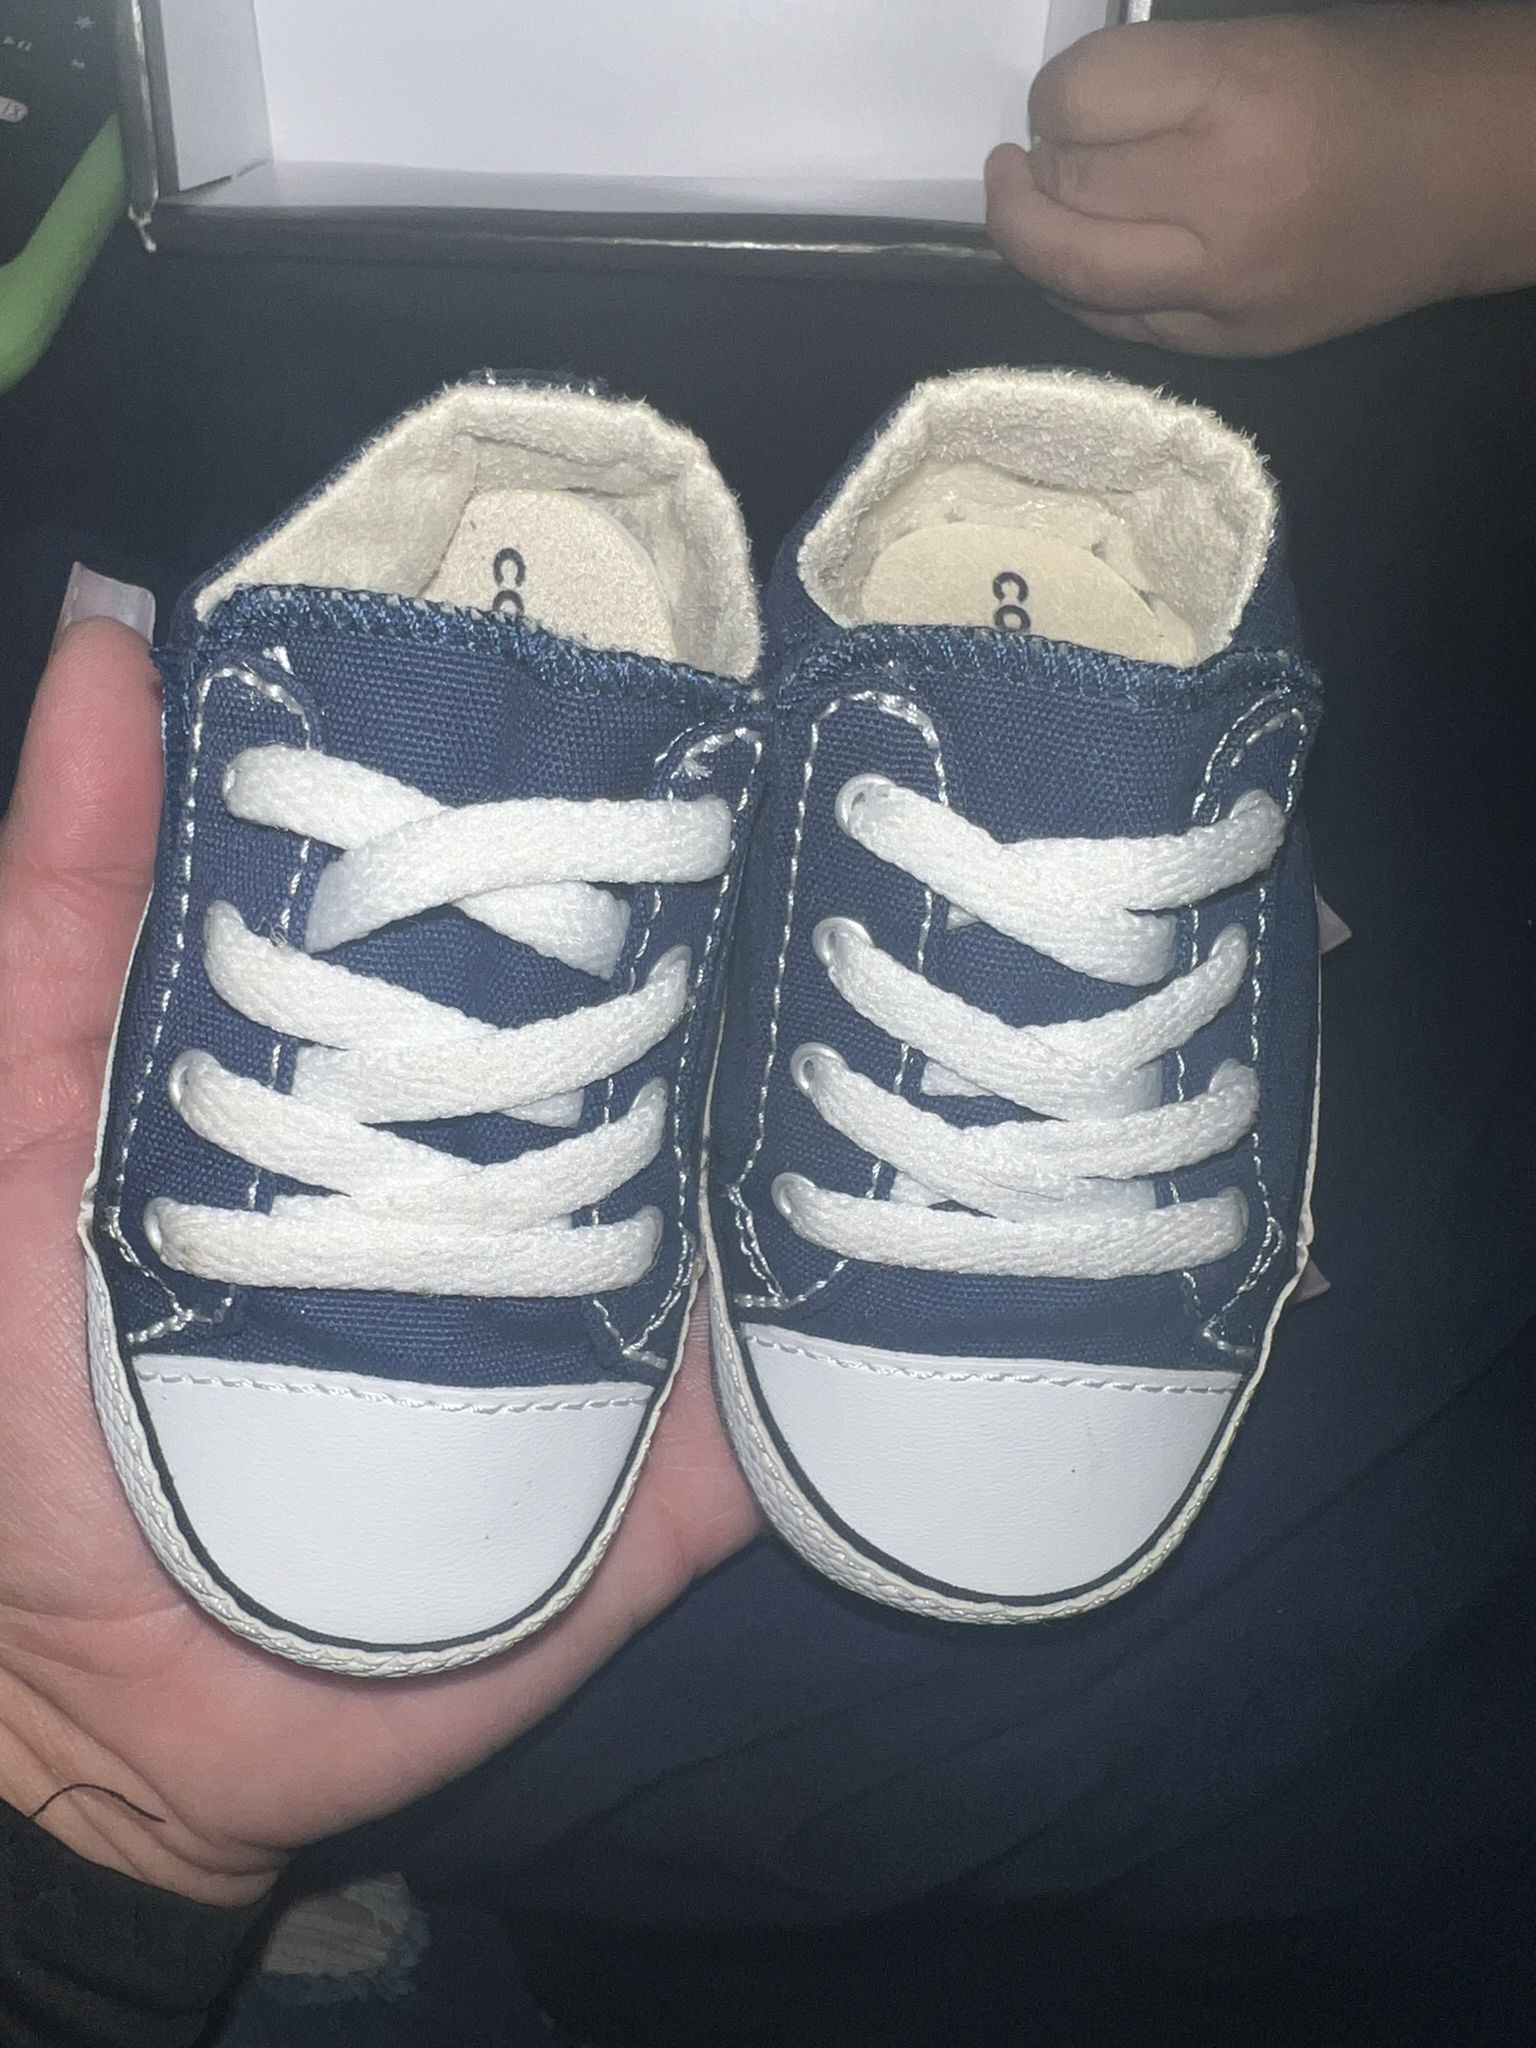 Baby Converse 